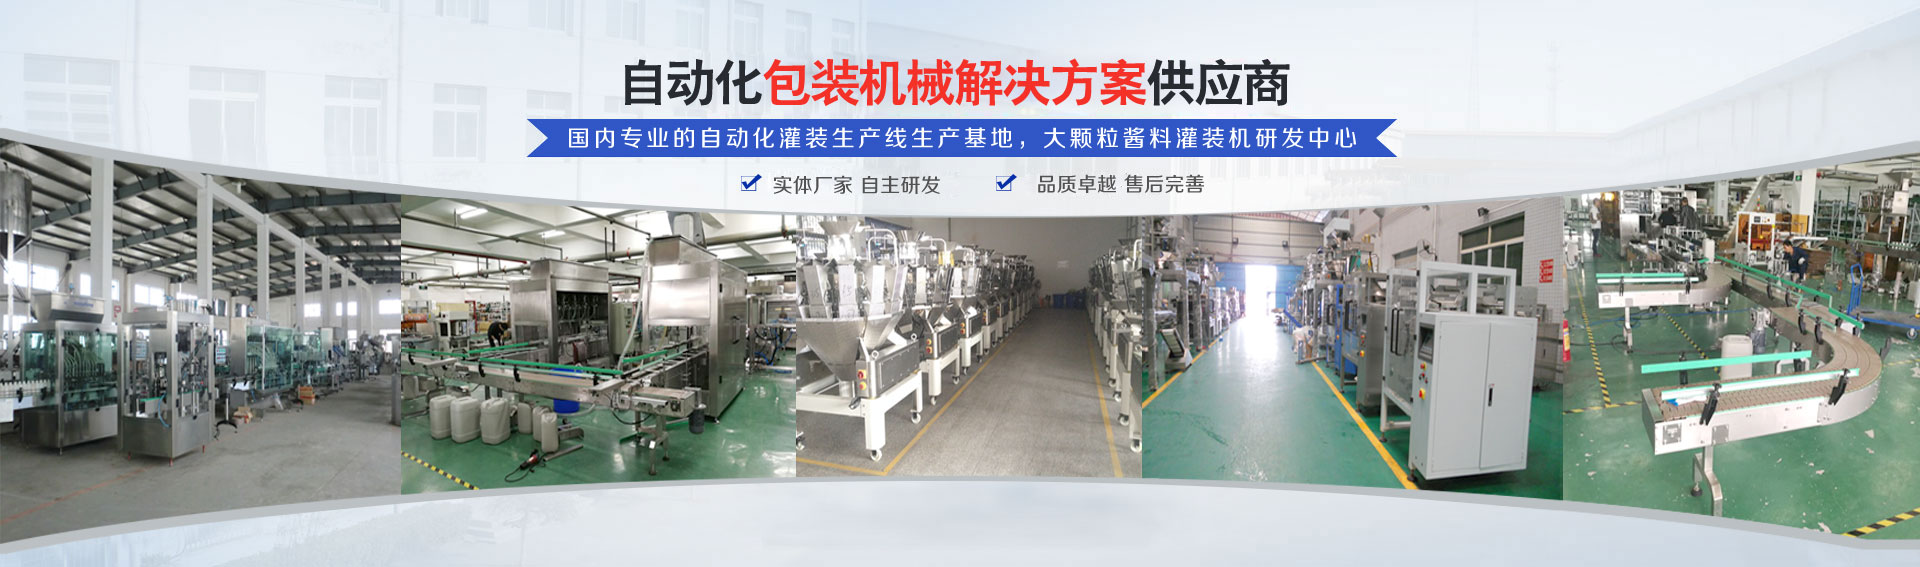 专业的自动化灌装机生产线(xian)研发基(ji)地